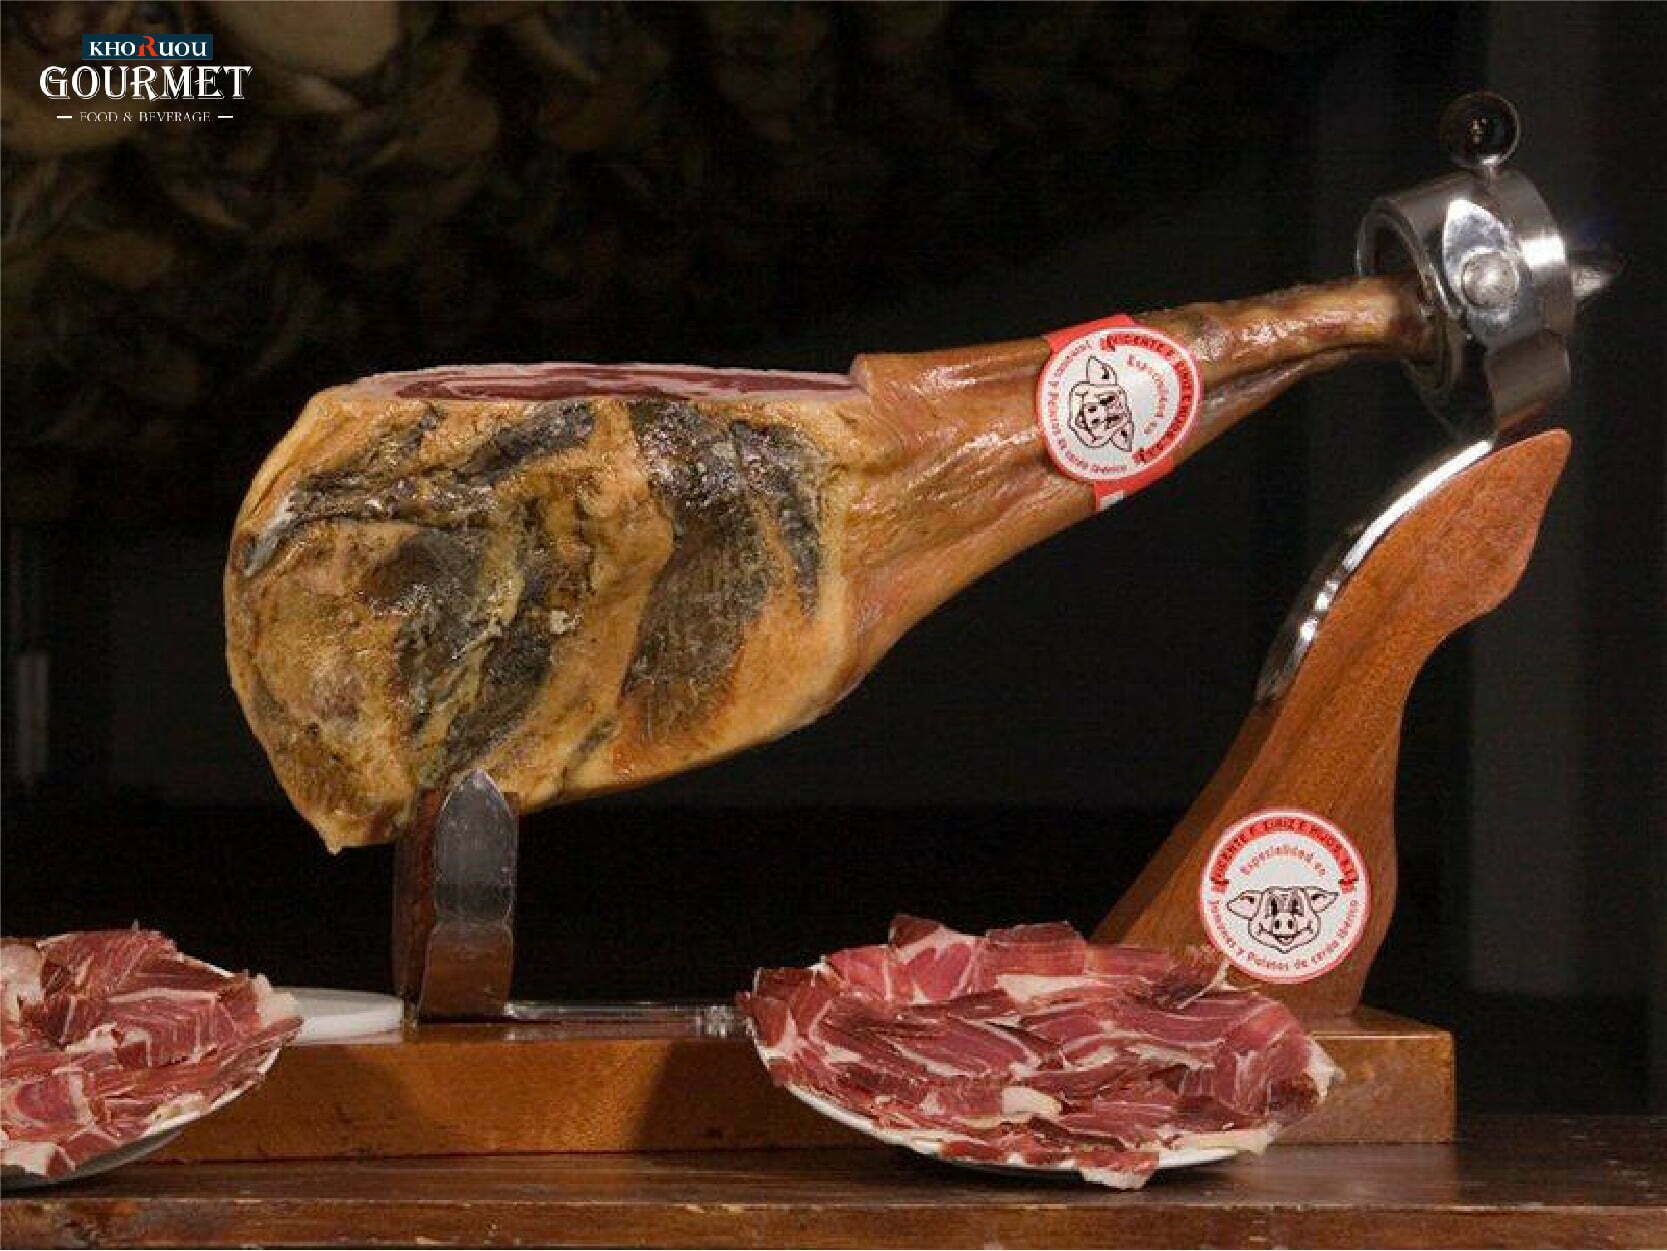 Thịt heo Iberico là đặc sản của Tây Ban Nha